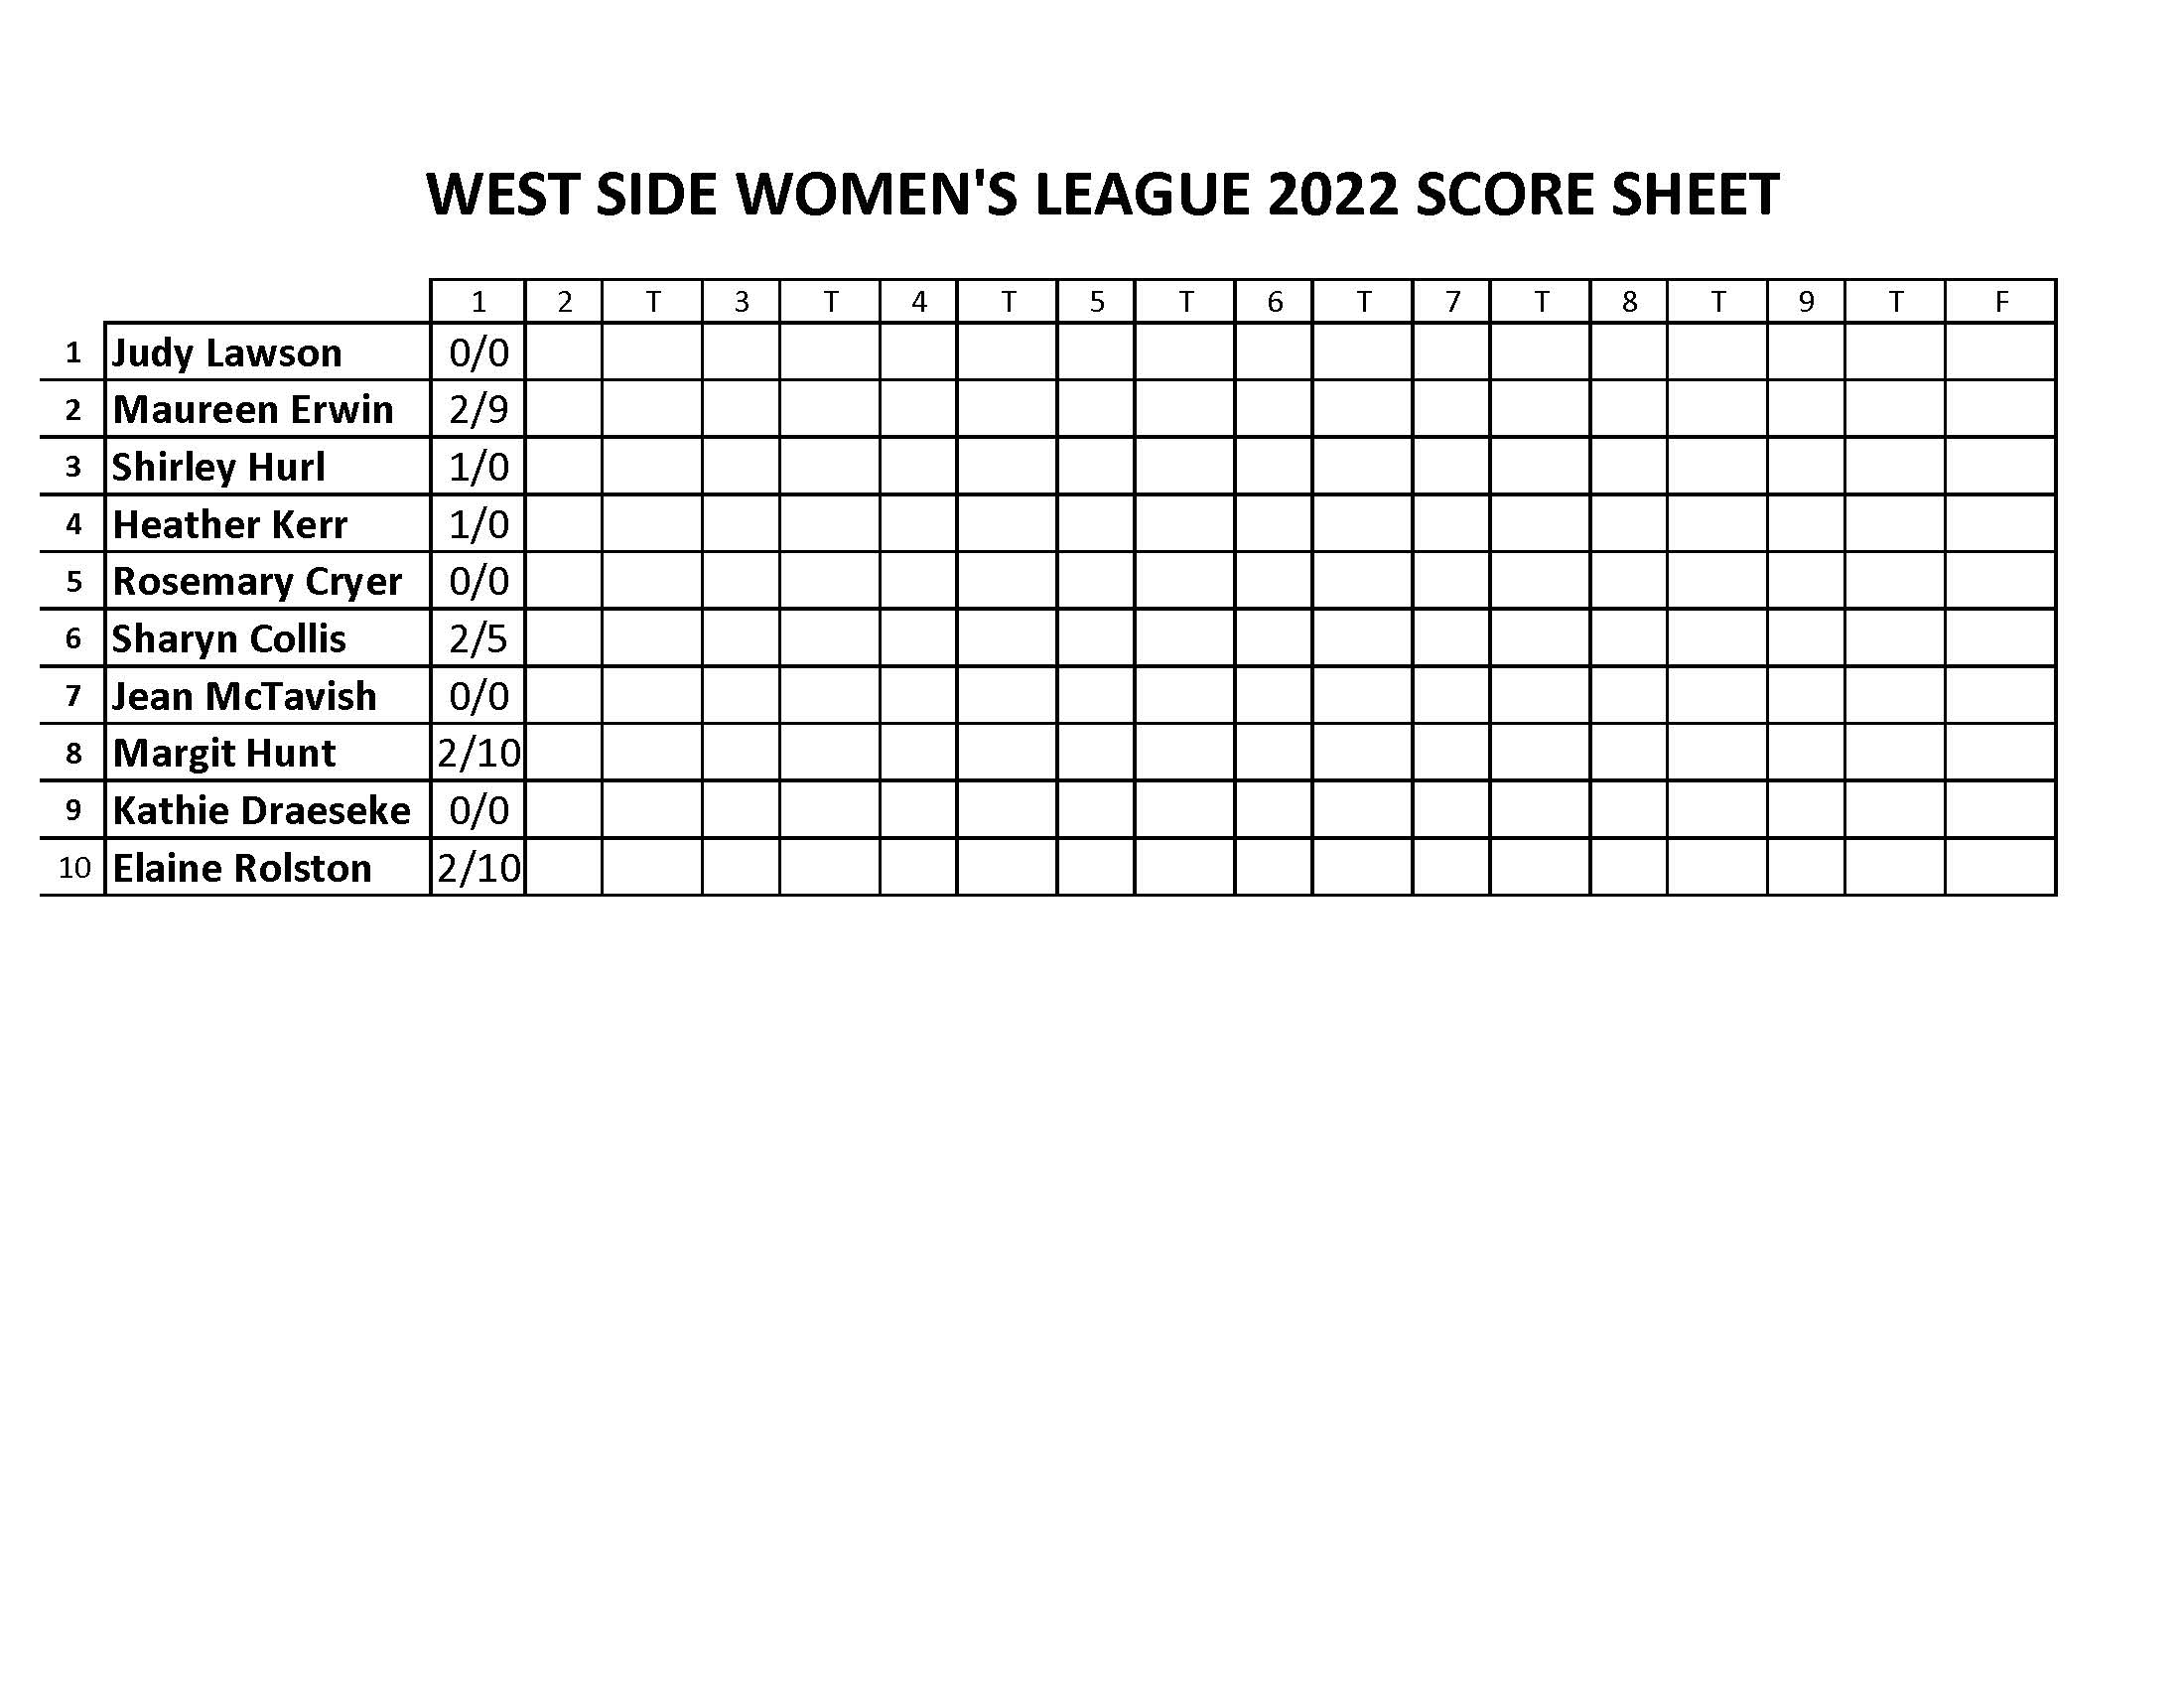 West Side Women's League Results